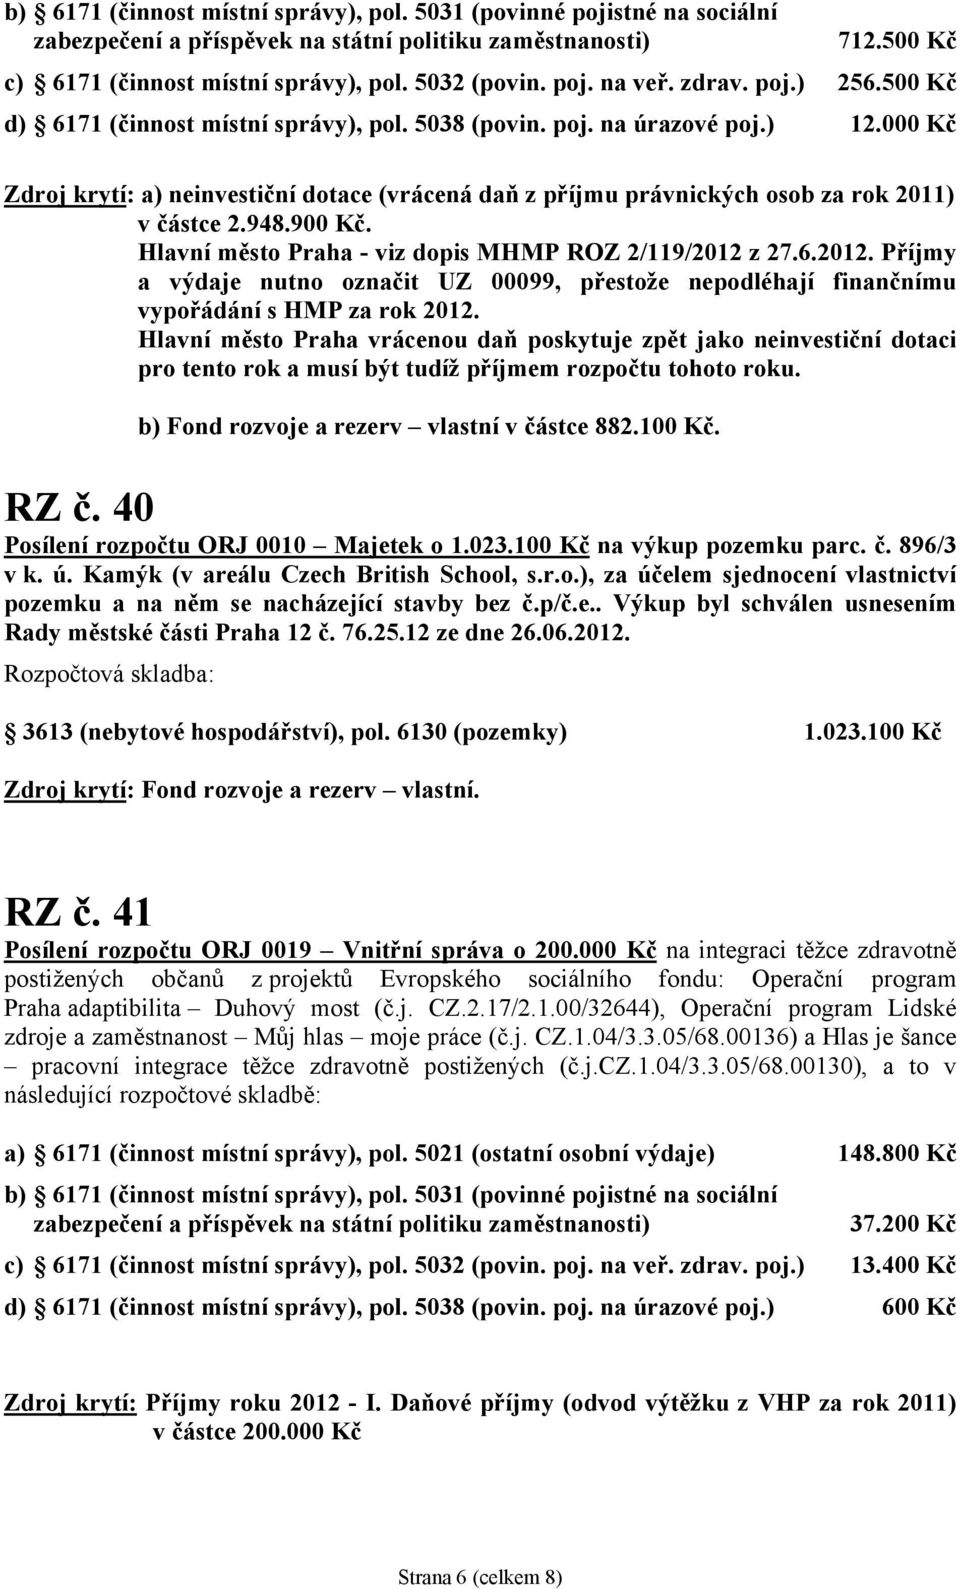 000 Kč Zdroj krytí: a) neinvestiční dotace (vrácená daň z příjmu právnických osob za rok 2011) v částce 2.948.900 Kč. Hlavní město Praha - viz dopis MHMP ROZ 2/119/2012 